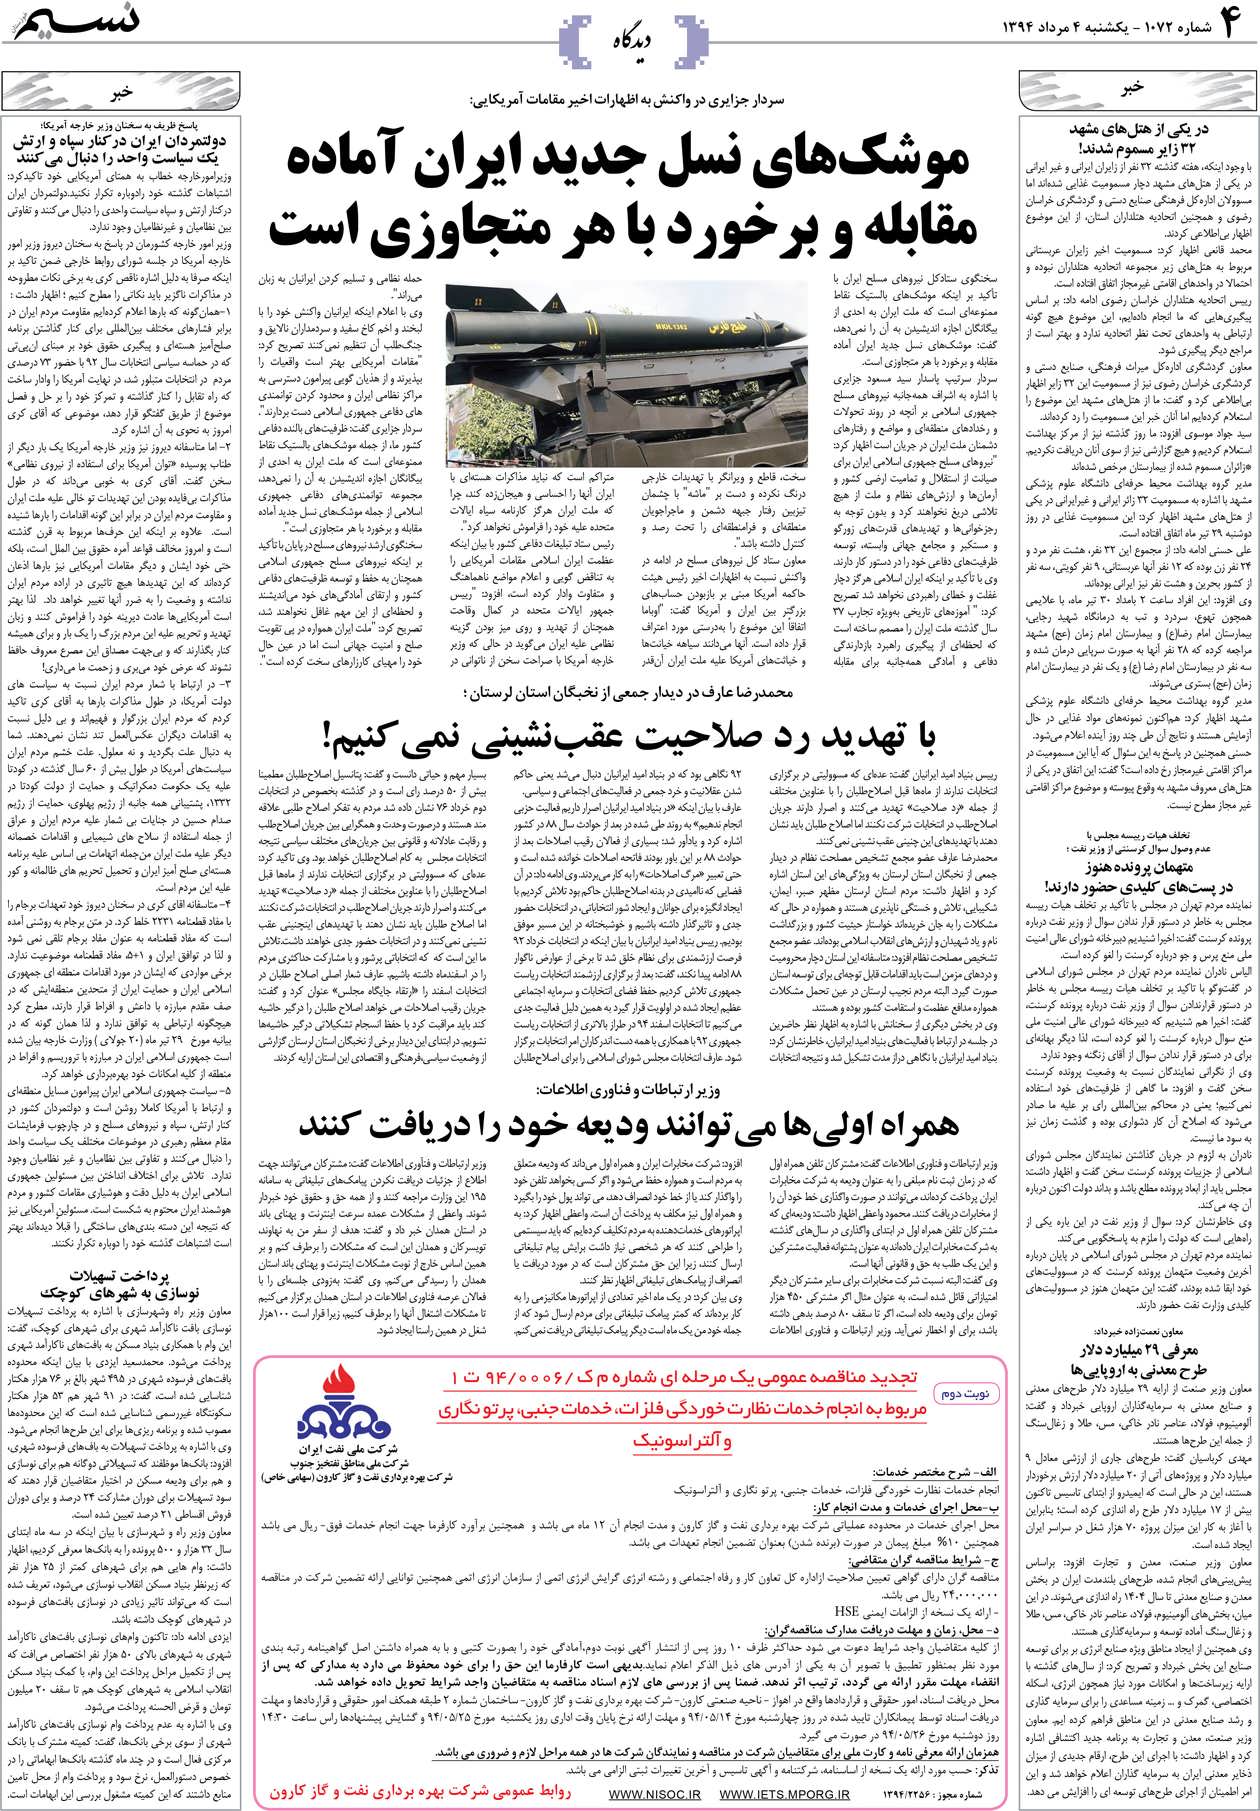 صفحه دیدگاه روزنامه نسیم شماره 1072